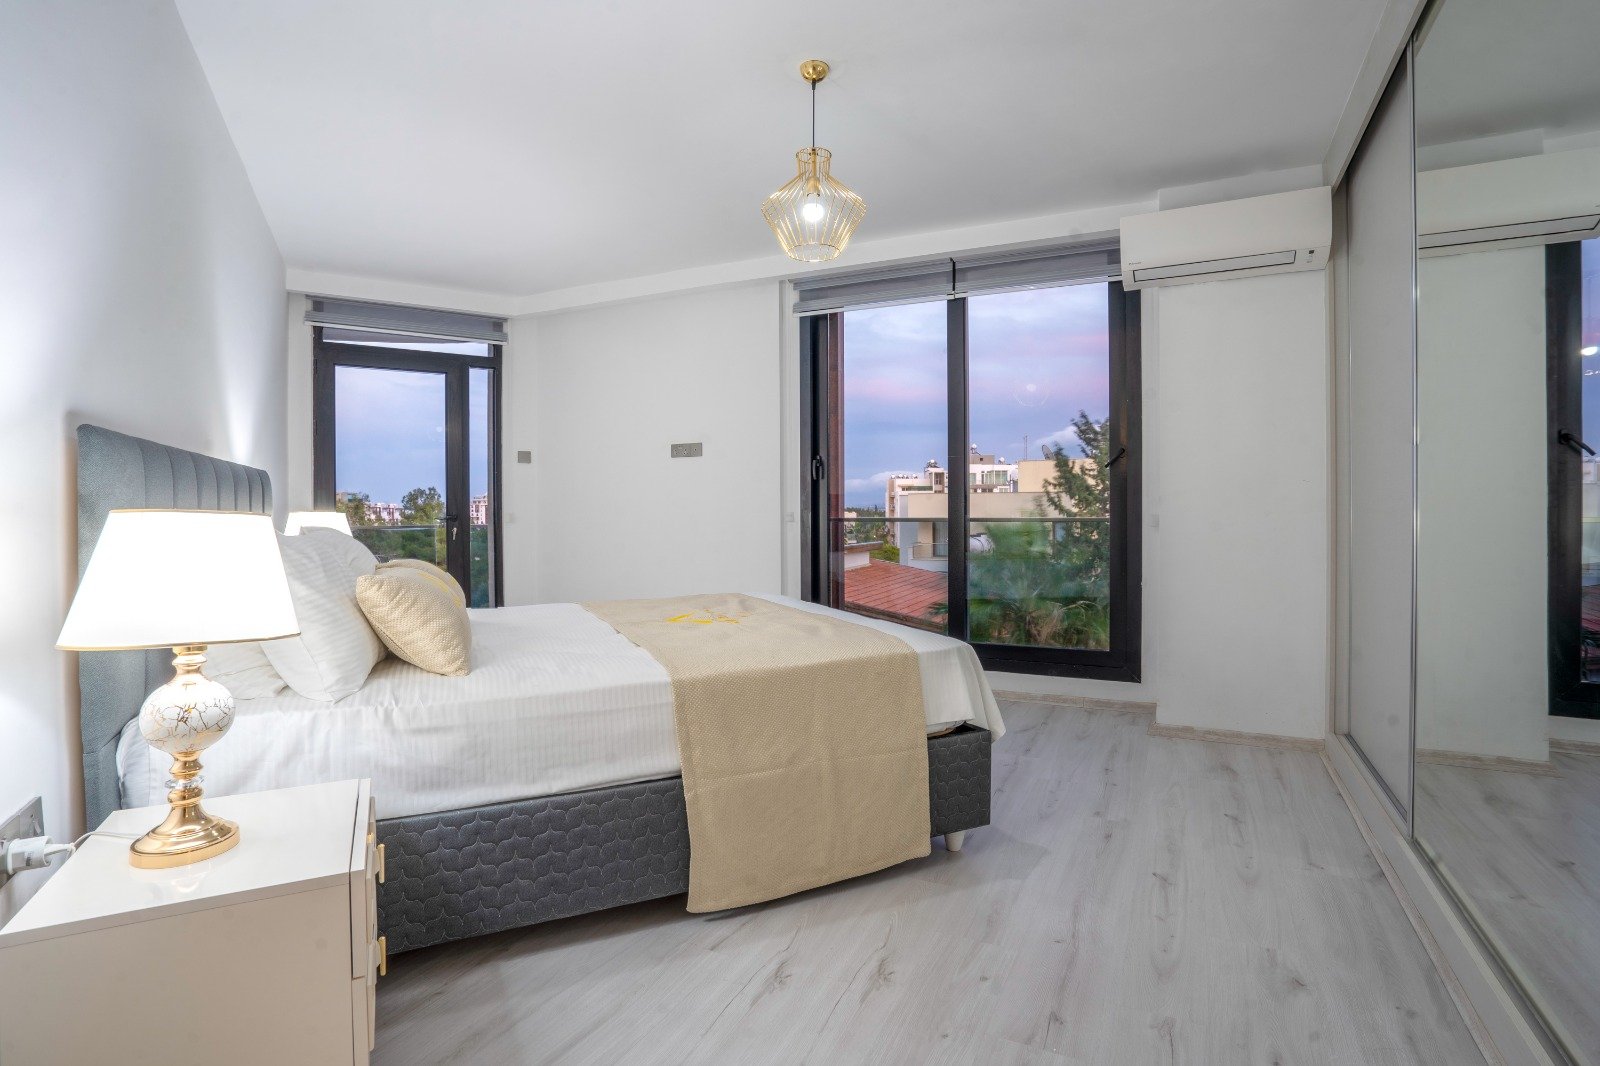 3 Bedroom Apartment For Sale In Kyrenia Center -273a431f-db8a-4533-846f-3c1abd333cb8